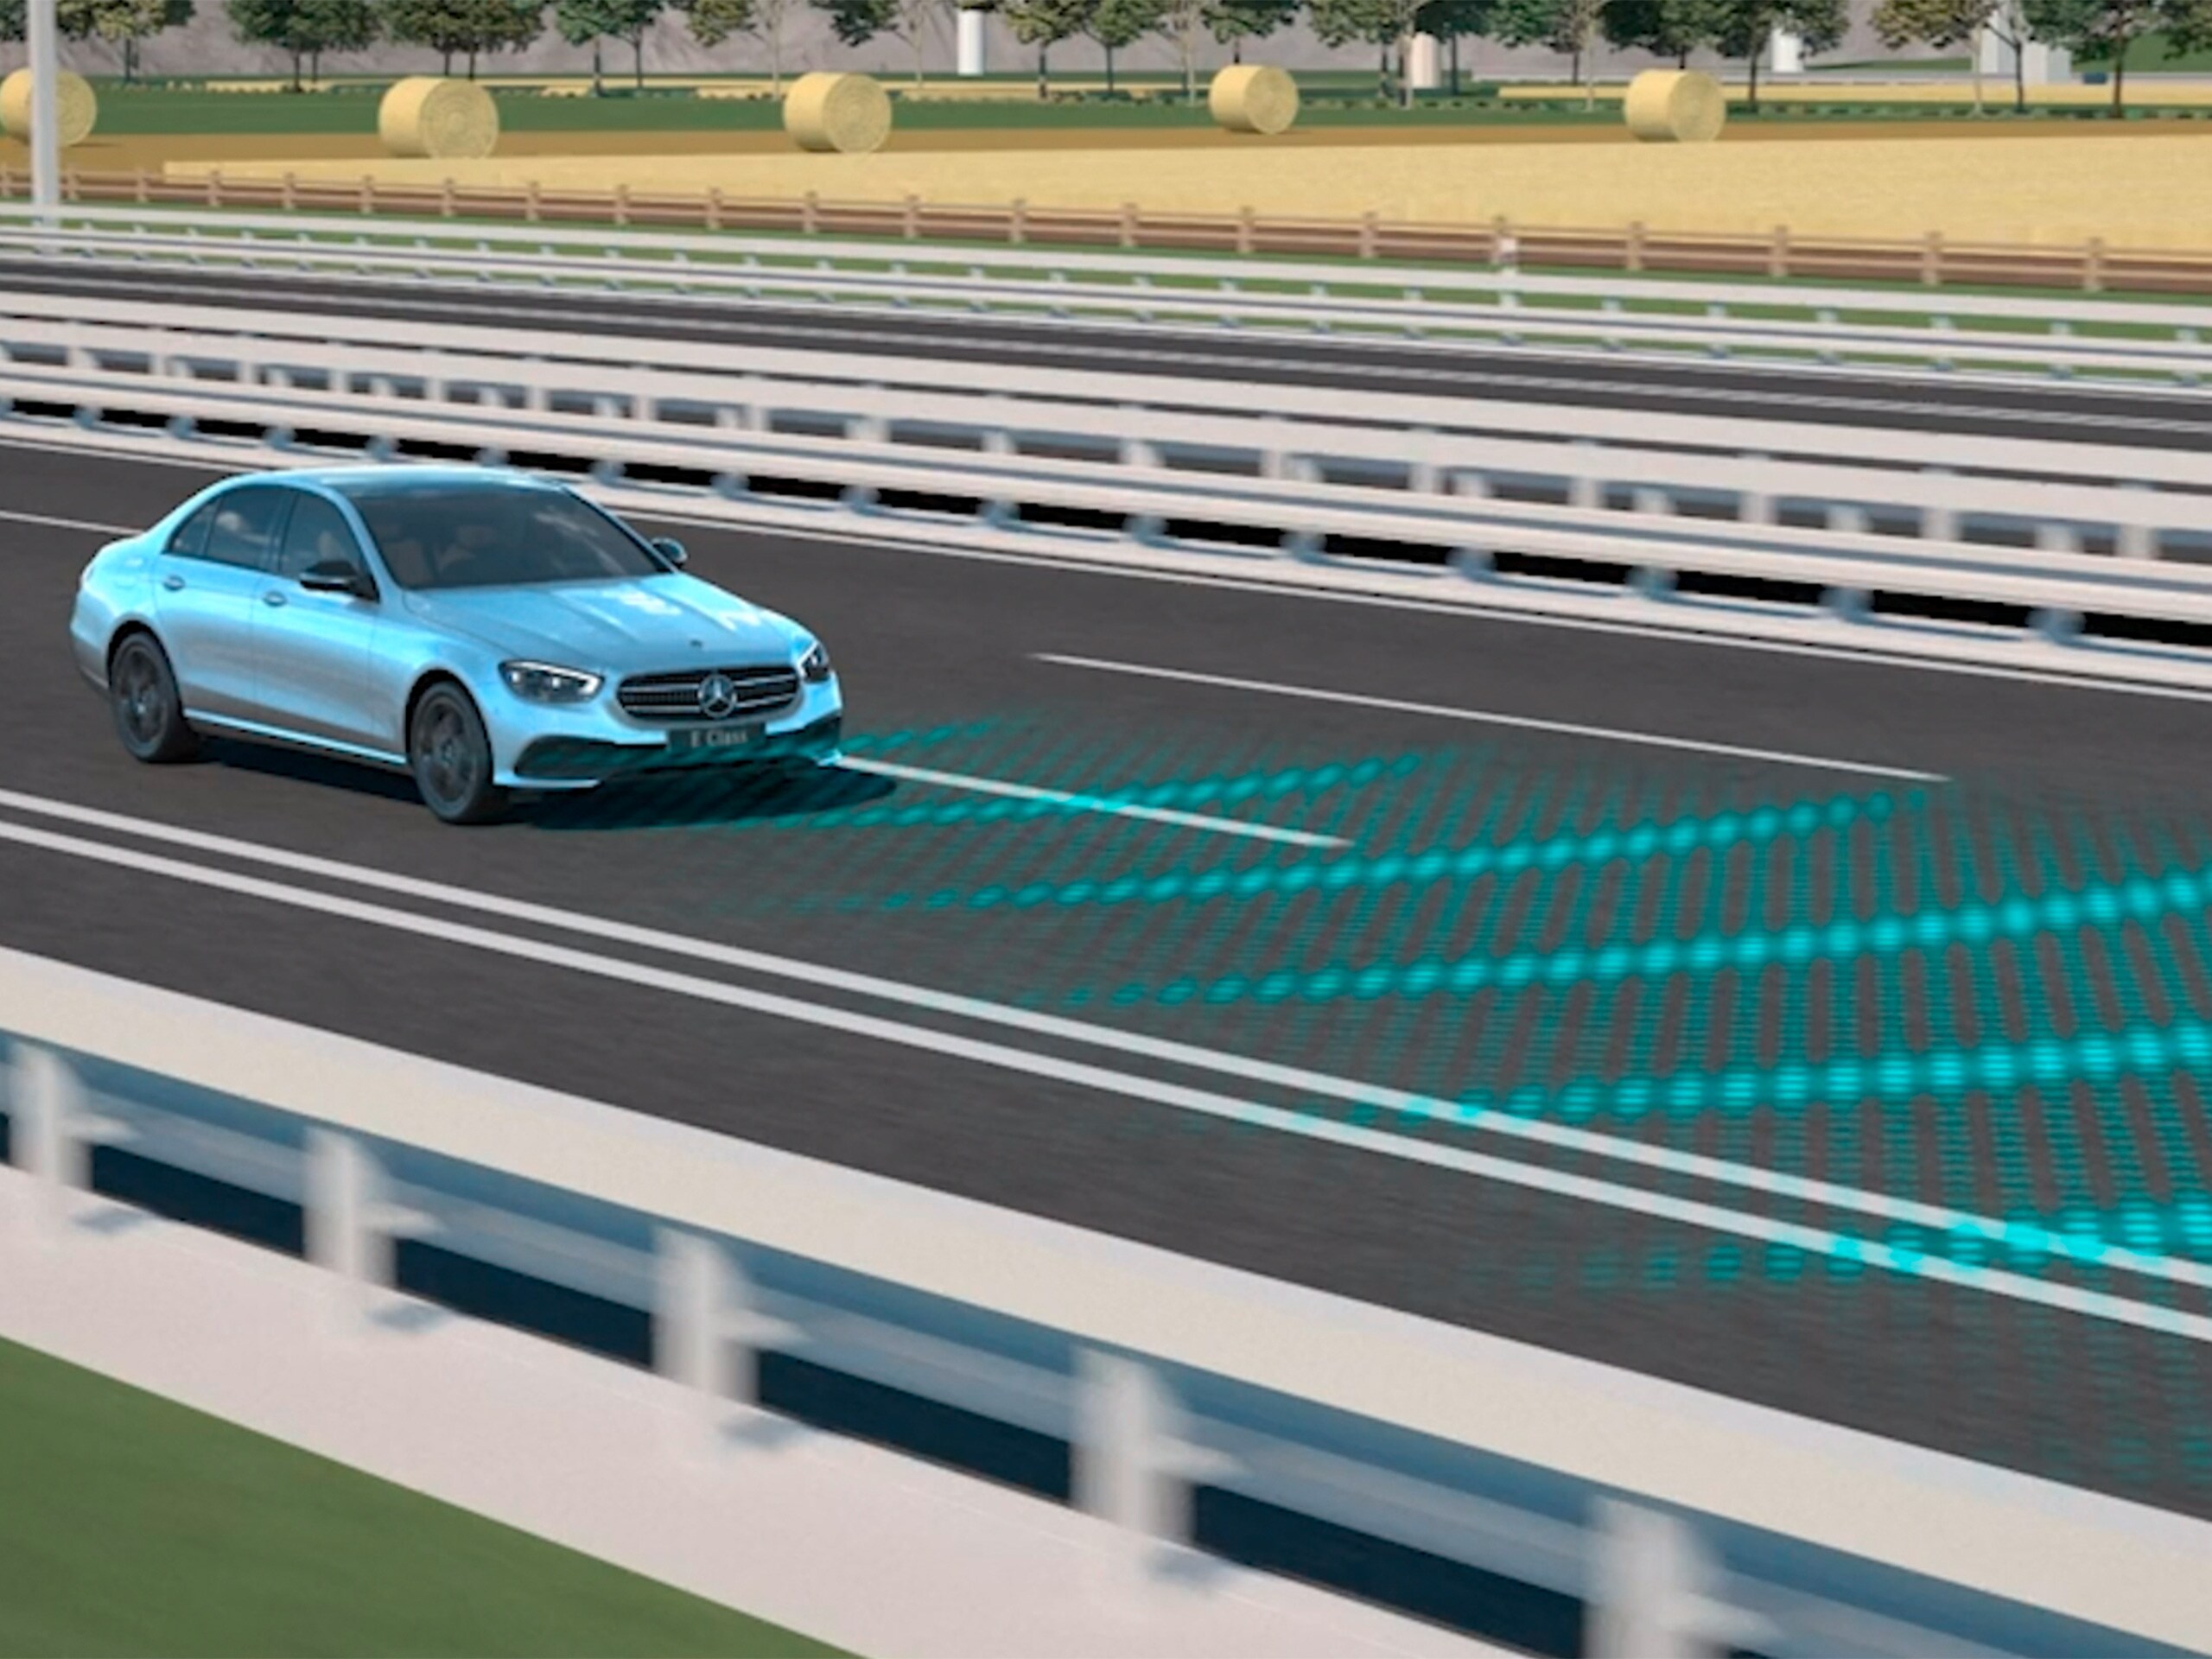 La vidéo montre le fonctionnement de l'assistant de régulation de distance DISTRONIC actif dans la Mercedes-Benz CLS Coupé.